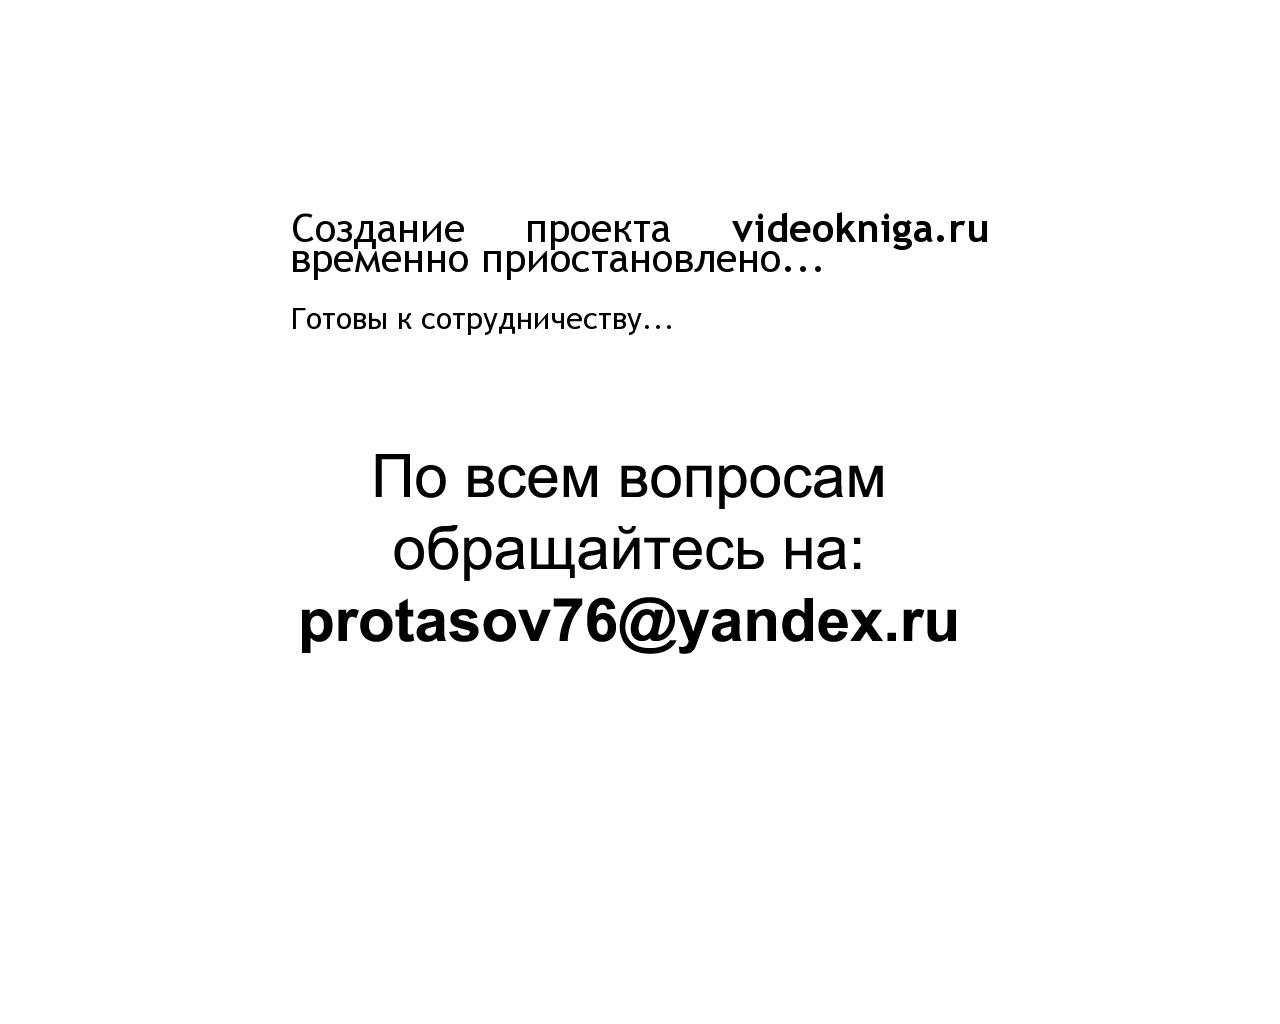 Изображение сайта videokniga.ru в разрешении 1280x1024